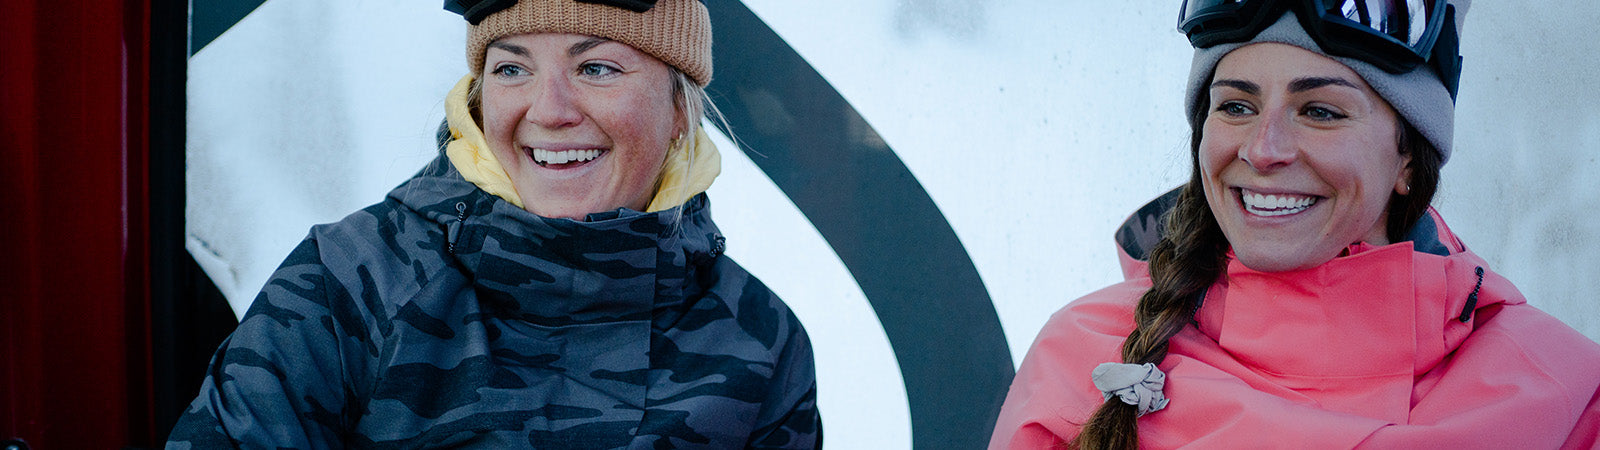 Welcome to STREET LEGEND online store - WOLF women's long snowboard jacket  in Women's long snowboard jackets